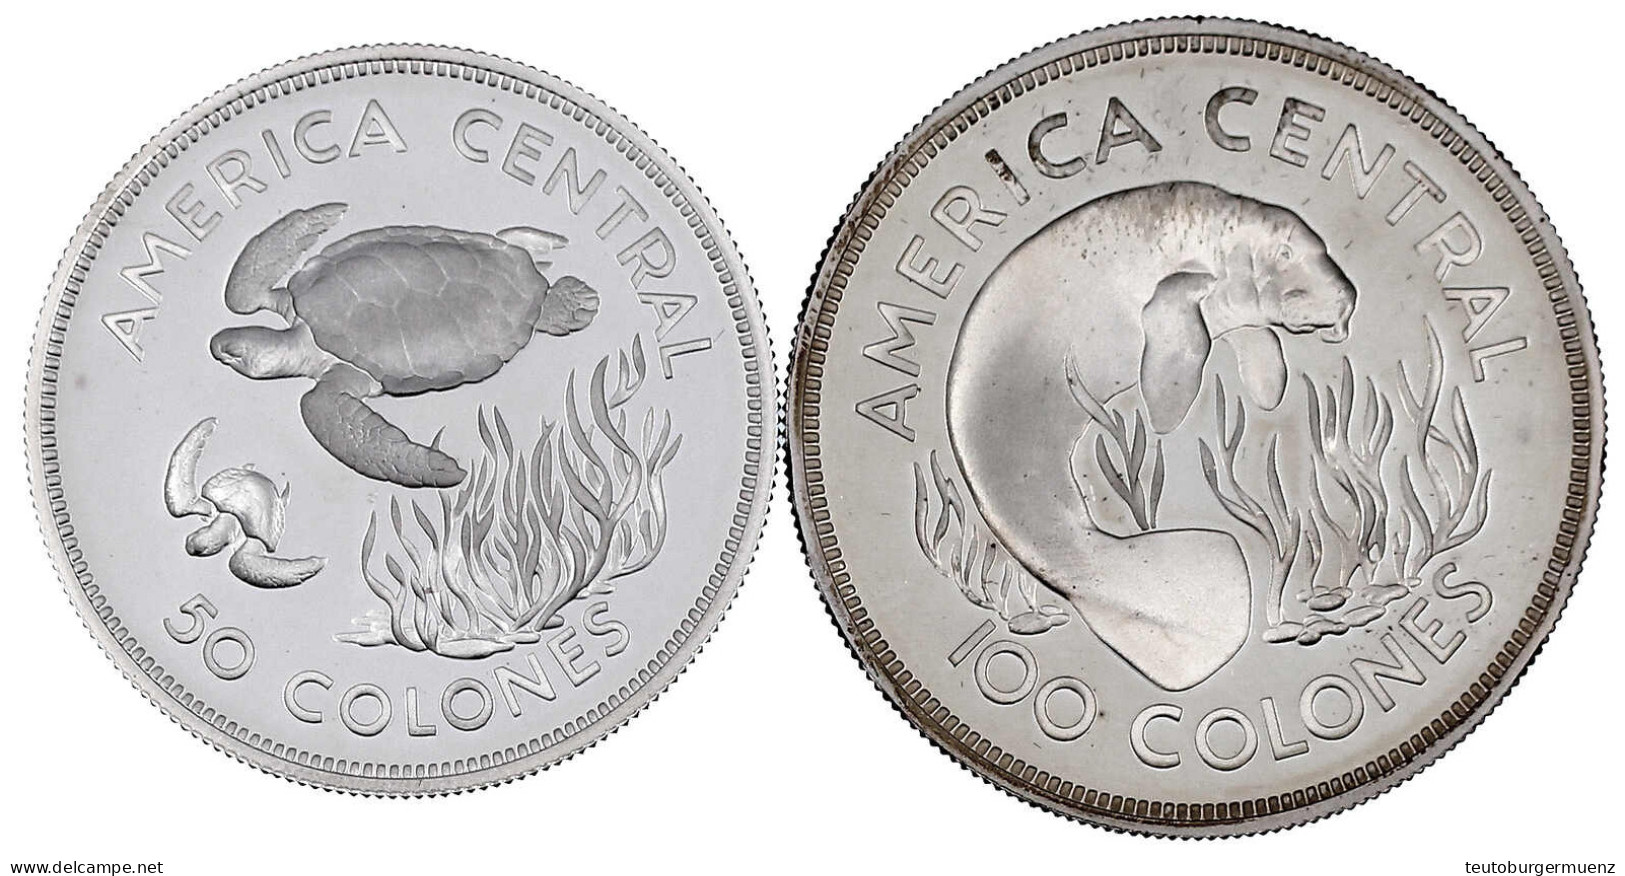 2 Silbermünzen: 50 Und 100 Colones 1974. Grüne Schildkröten Und Sehkuh. Polierte Platte. Krause/Mishler 200a Und 201a. - Costa Rica